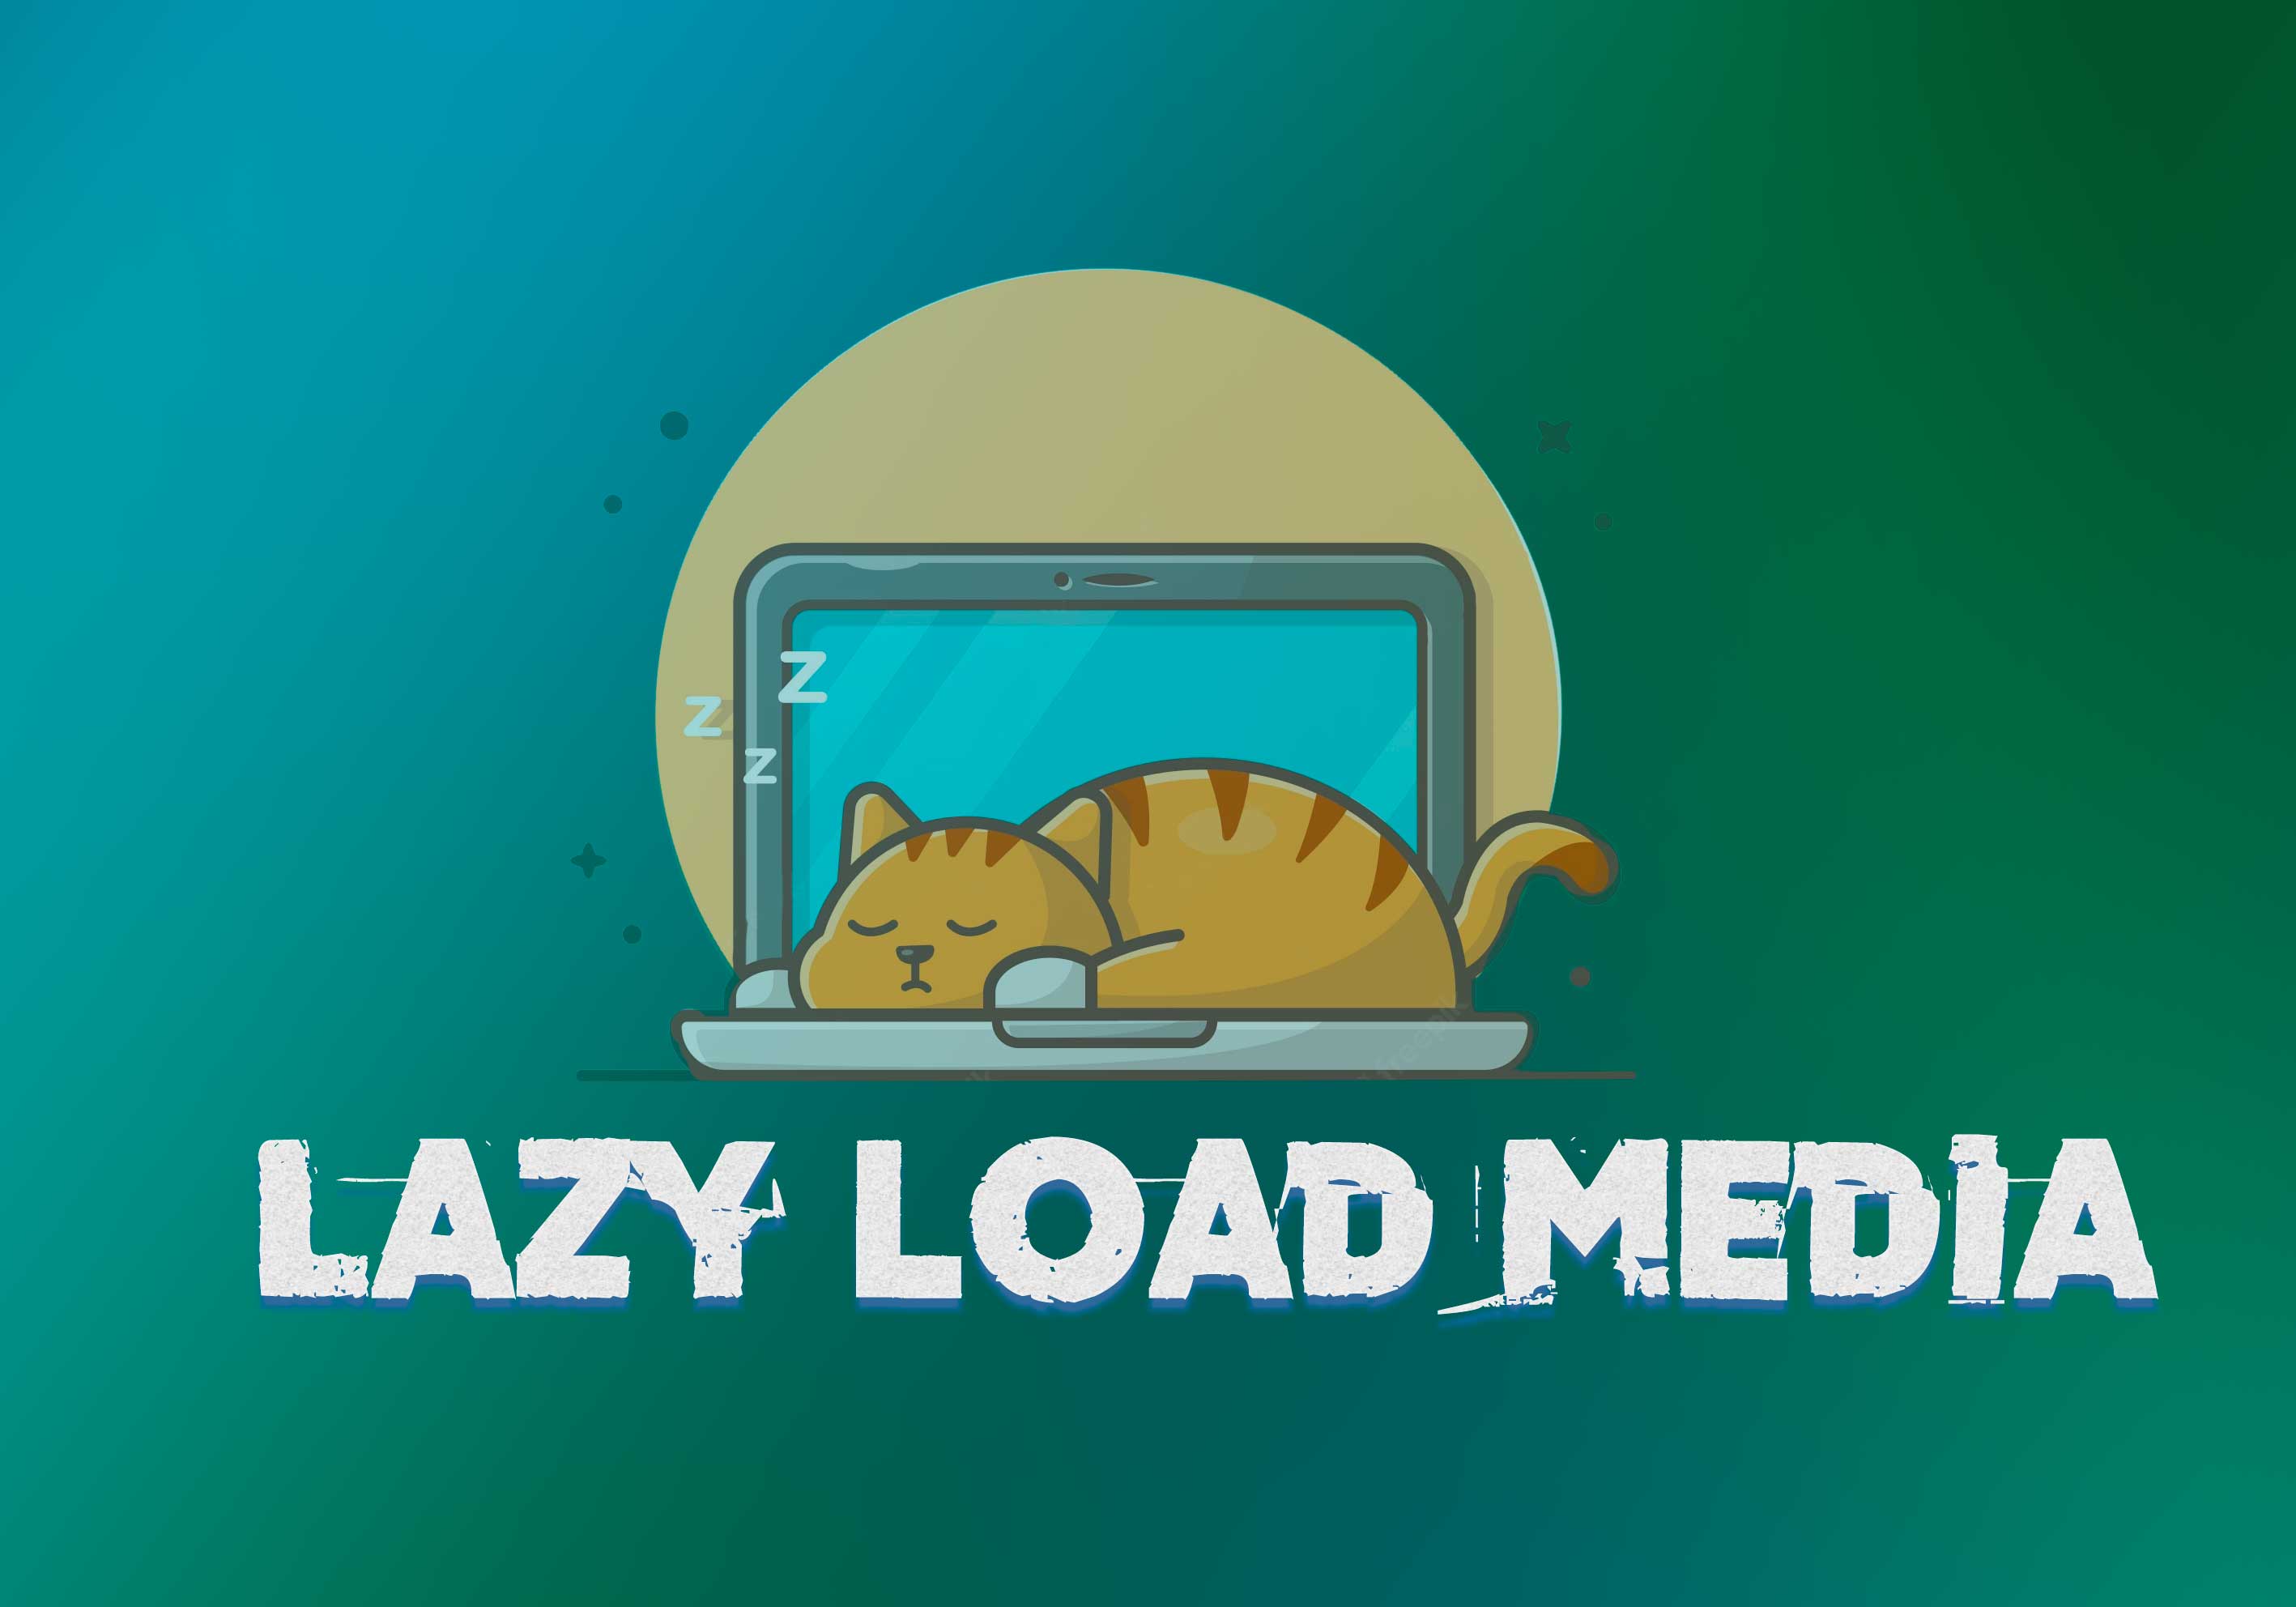  Lazy load media